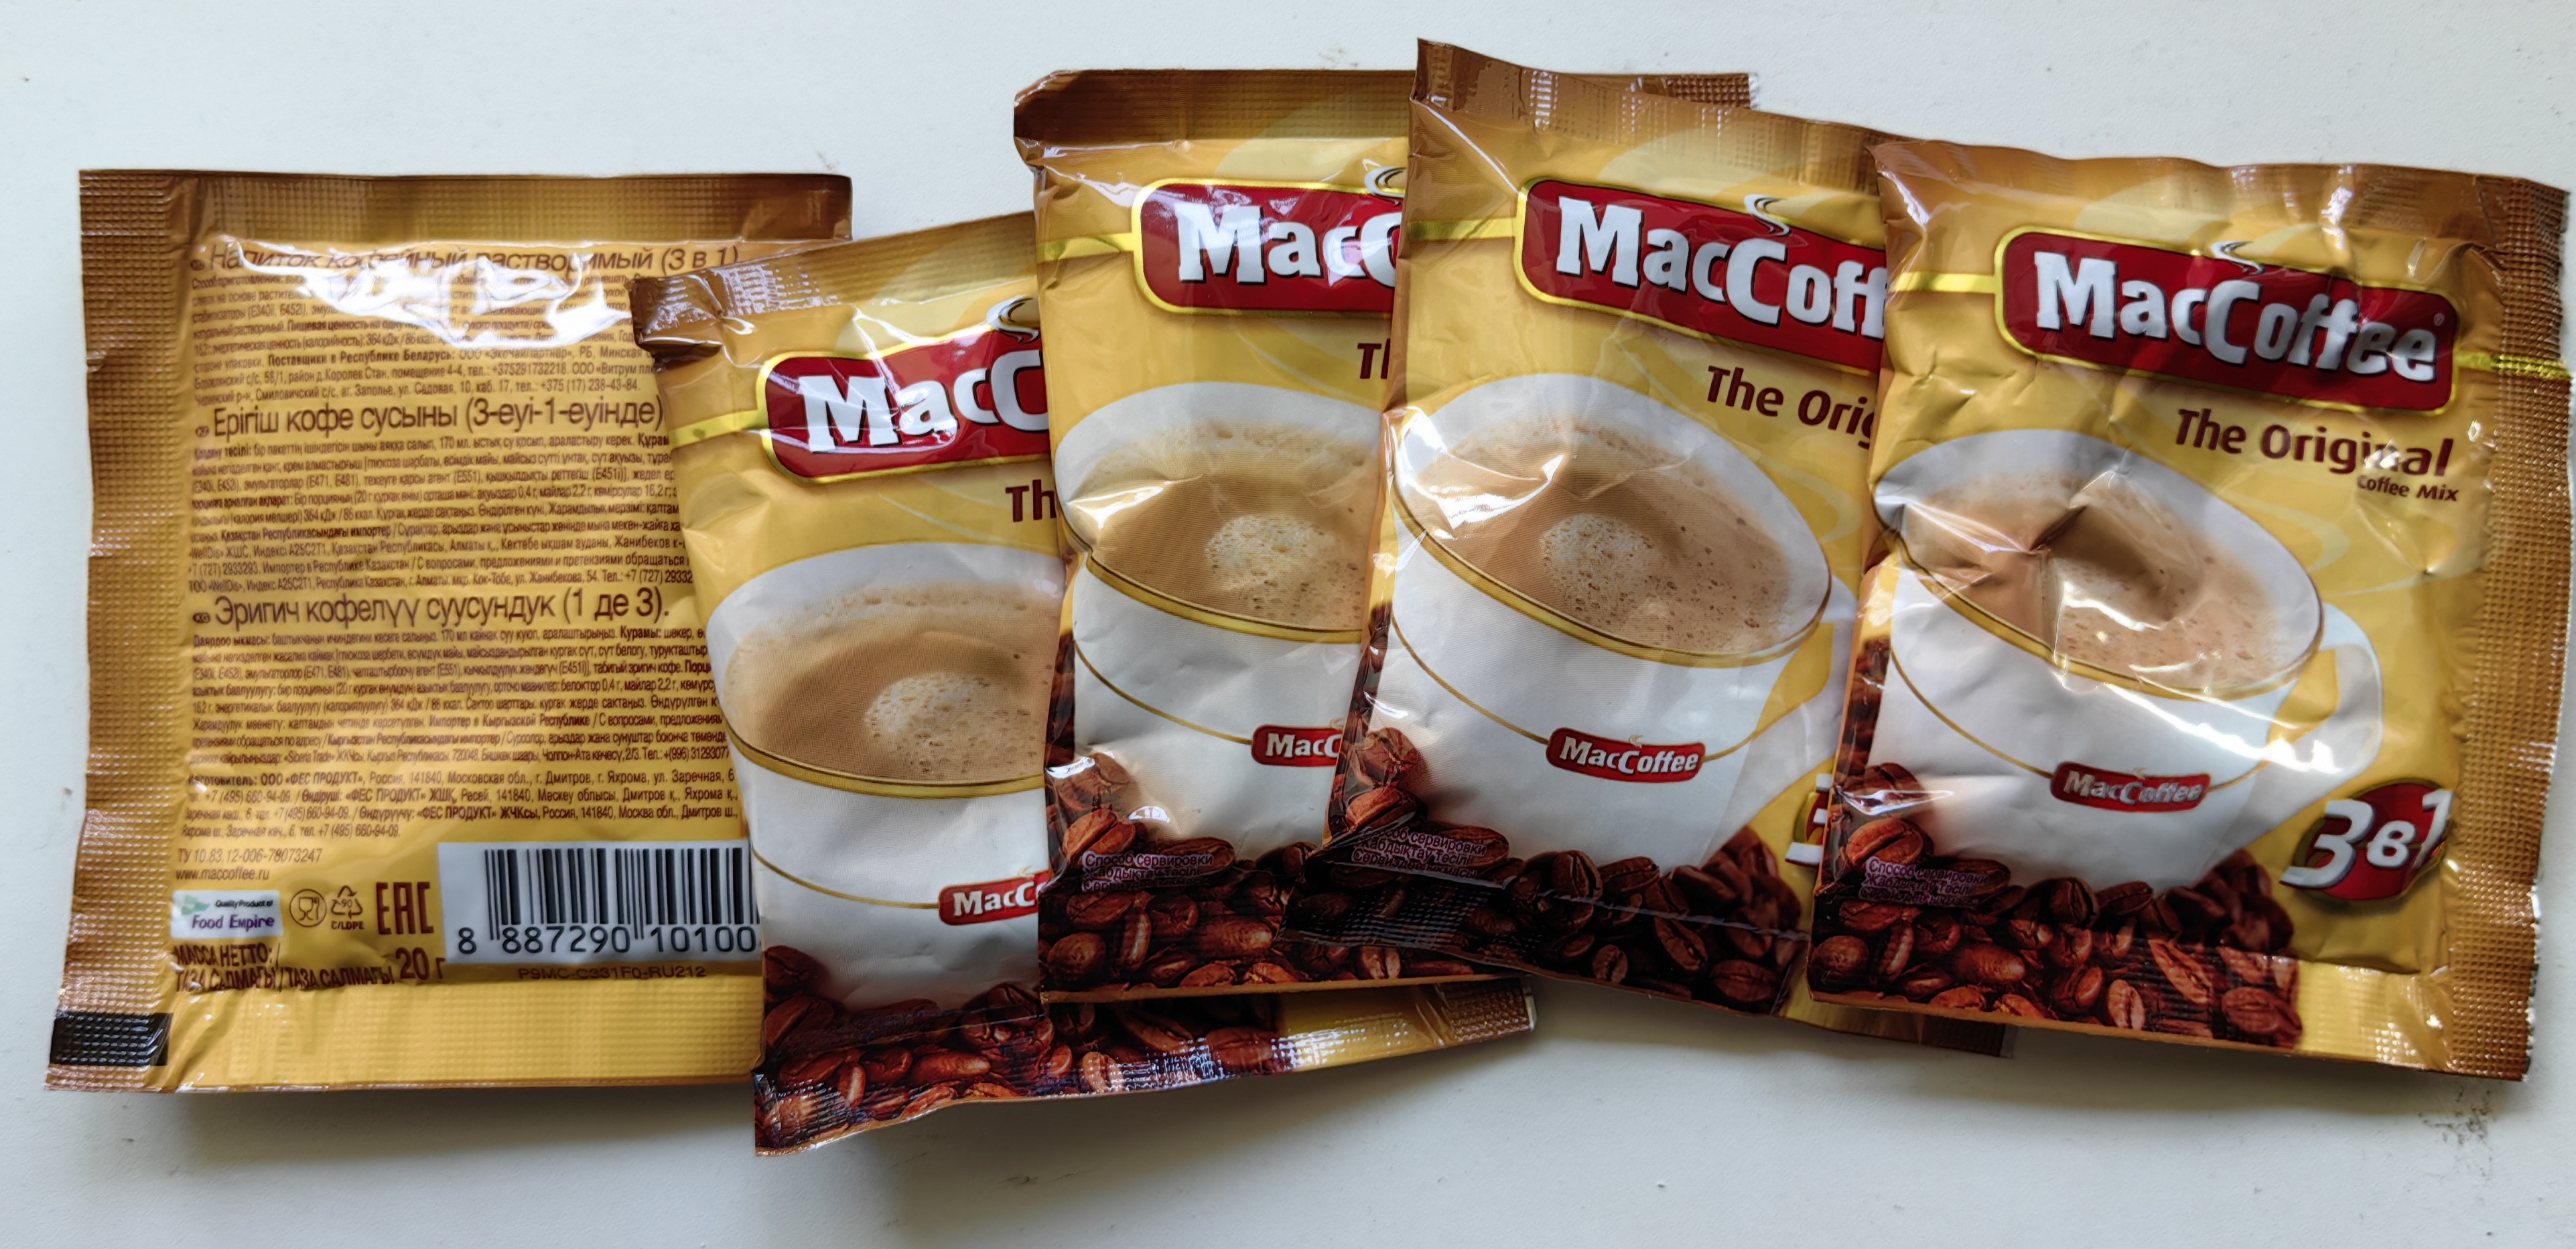 Маккофе 3 в 1 Ореховый. MACCOFFEE Original 3в1. Маккофе оригинал 3 в 1. Кофейный напиток Маккофе ориджинал. Кофе растворимый 1 кг